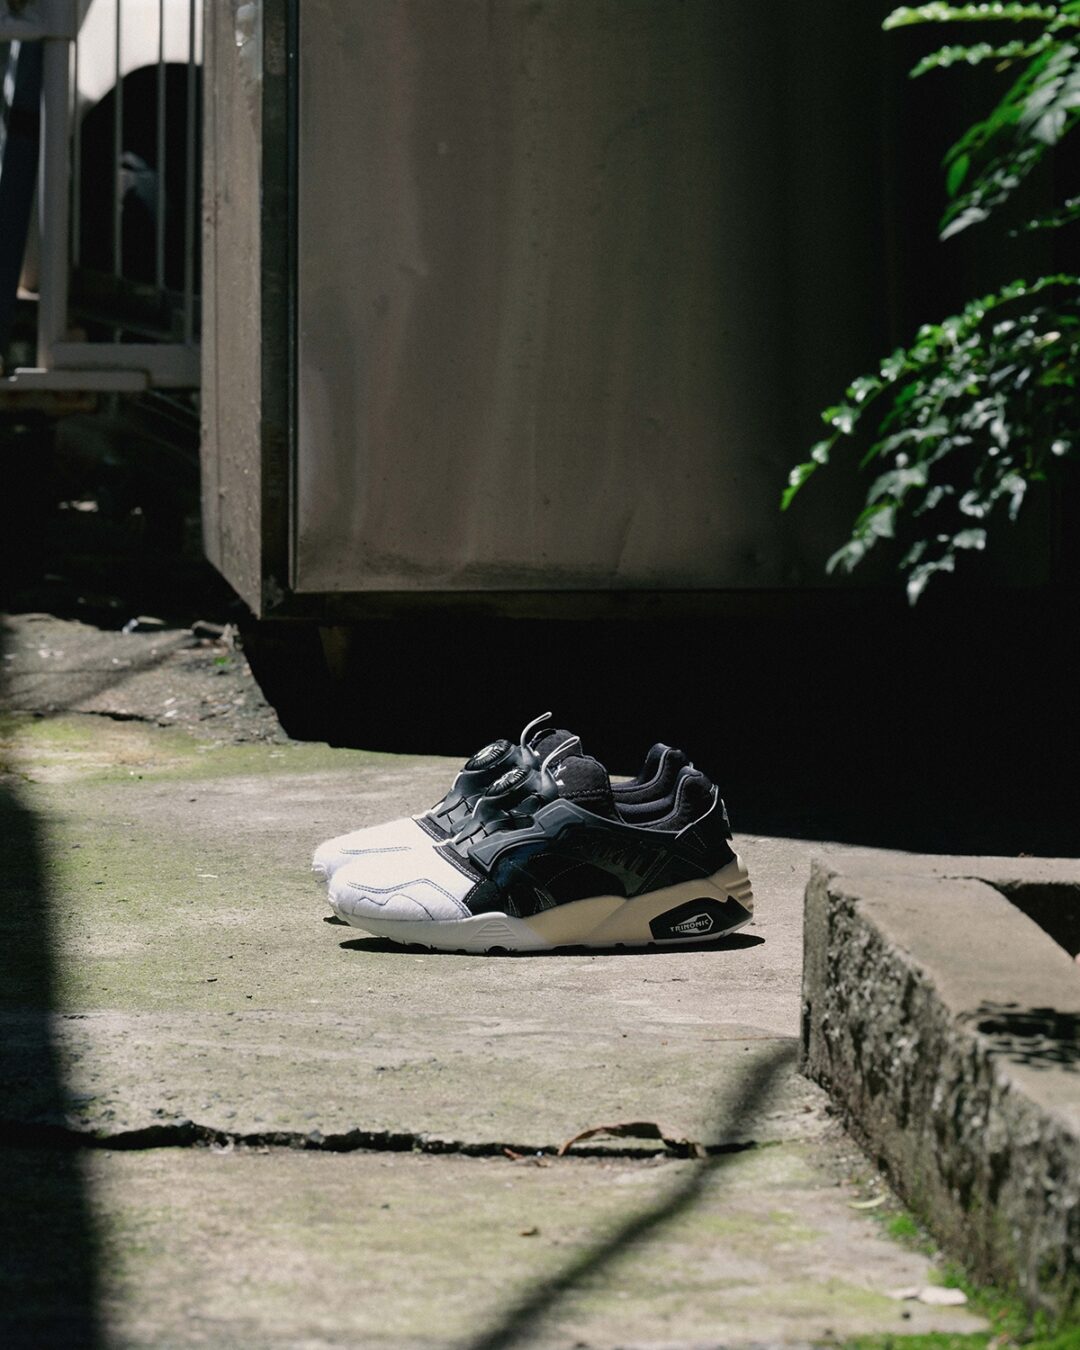 【国内 5/27 発売】mita sneakers × PUMA DISC BLAZE OG MS ”UENO PANDA” (ミタスニーカーズ プーマ ディスク ブレイズ “ウエノパンダ/上野”)